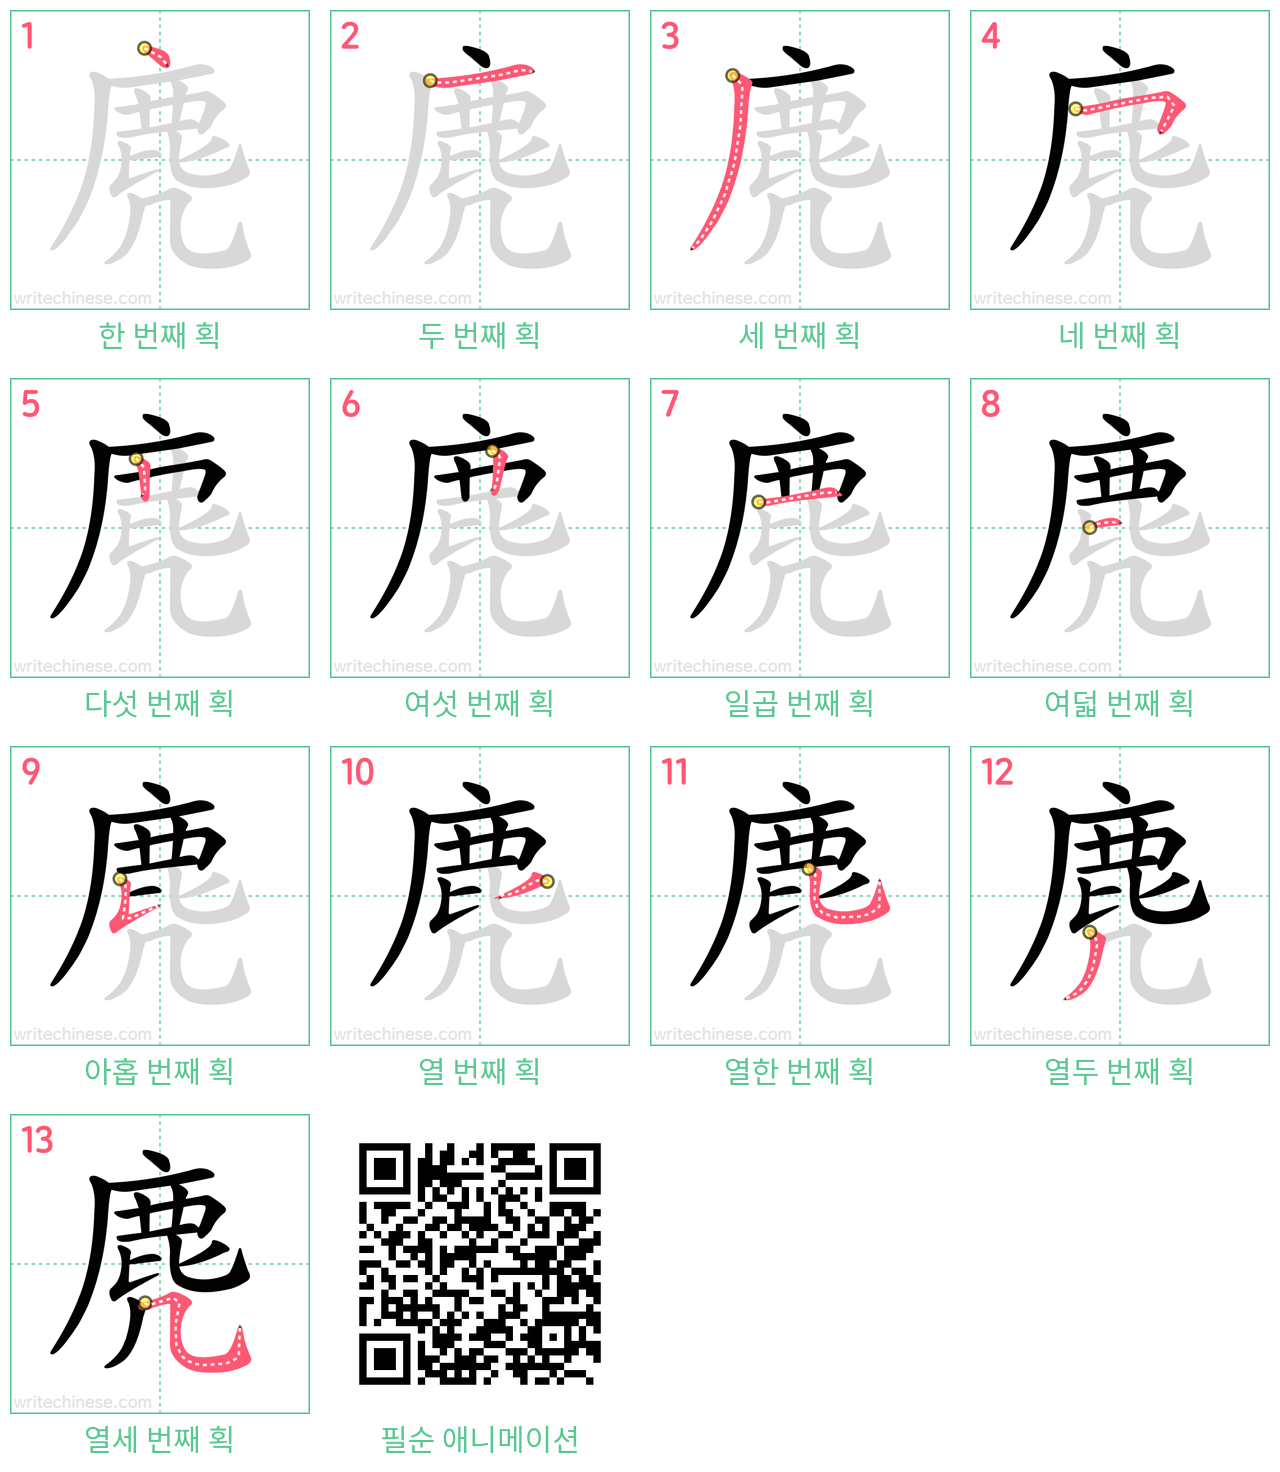 麂 step-by-step stroke order diagrams